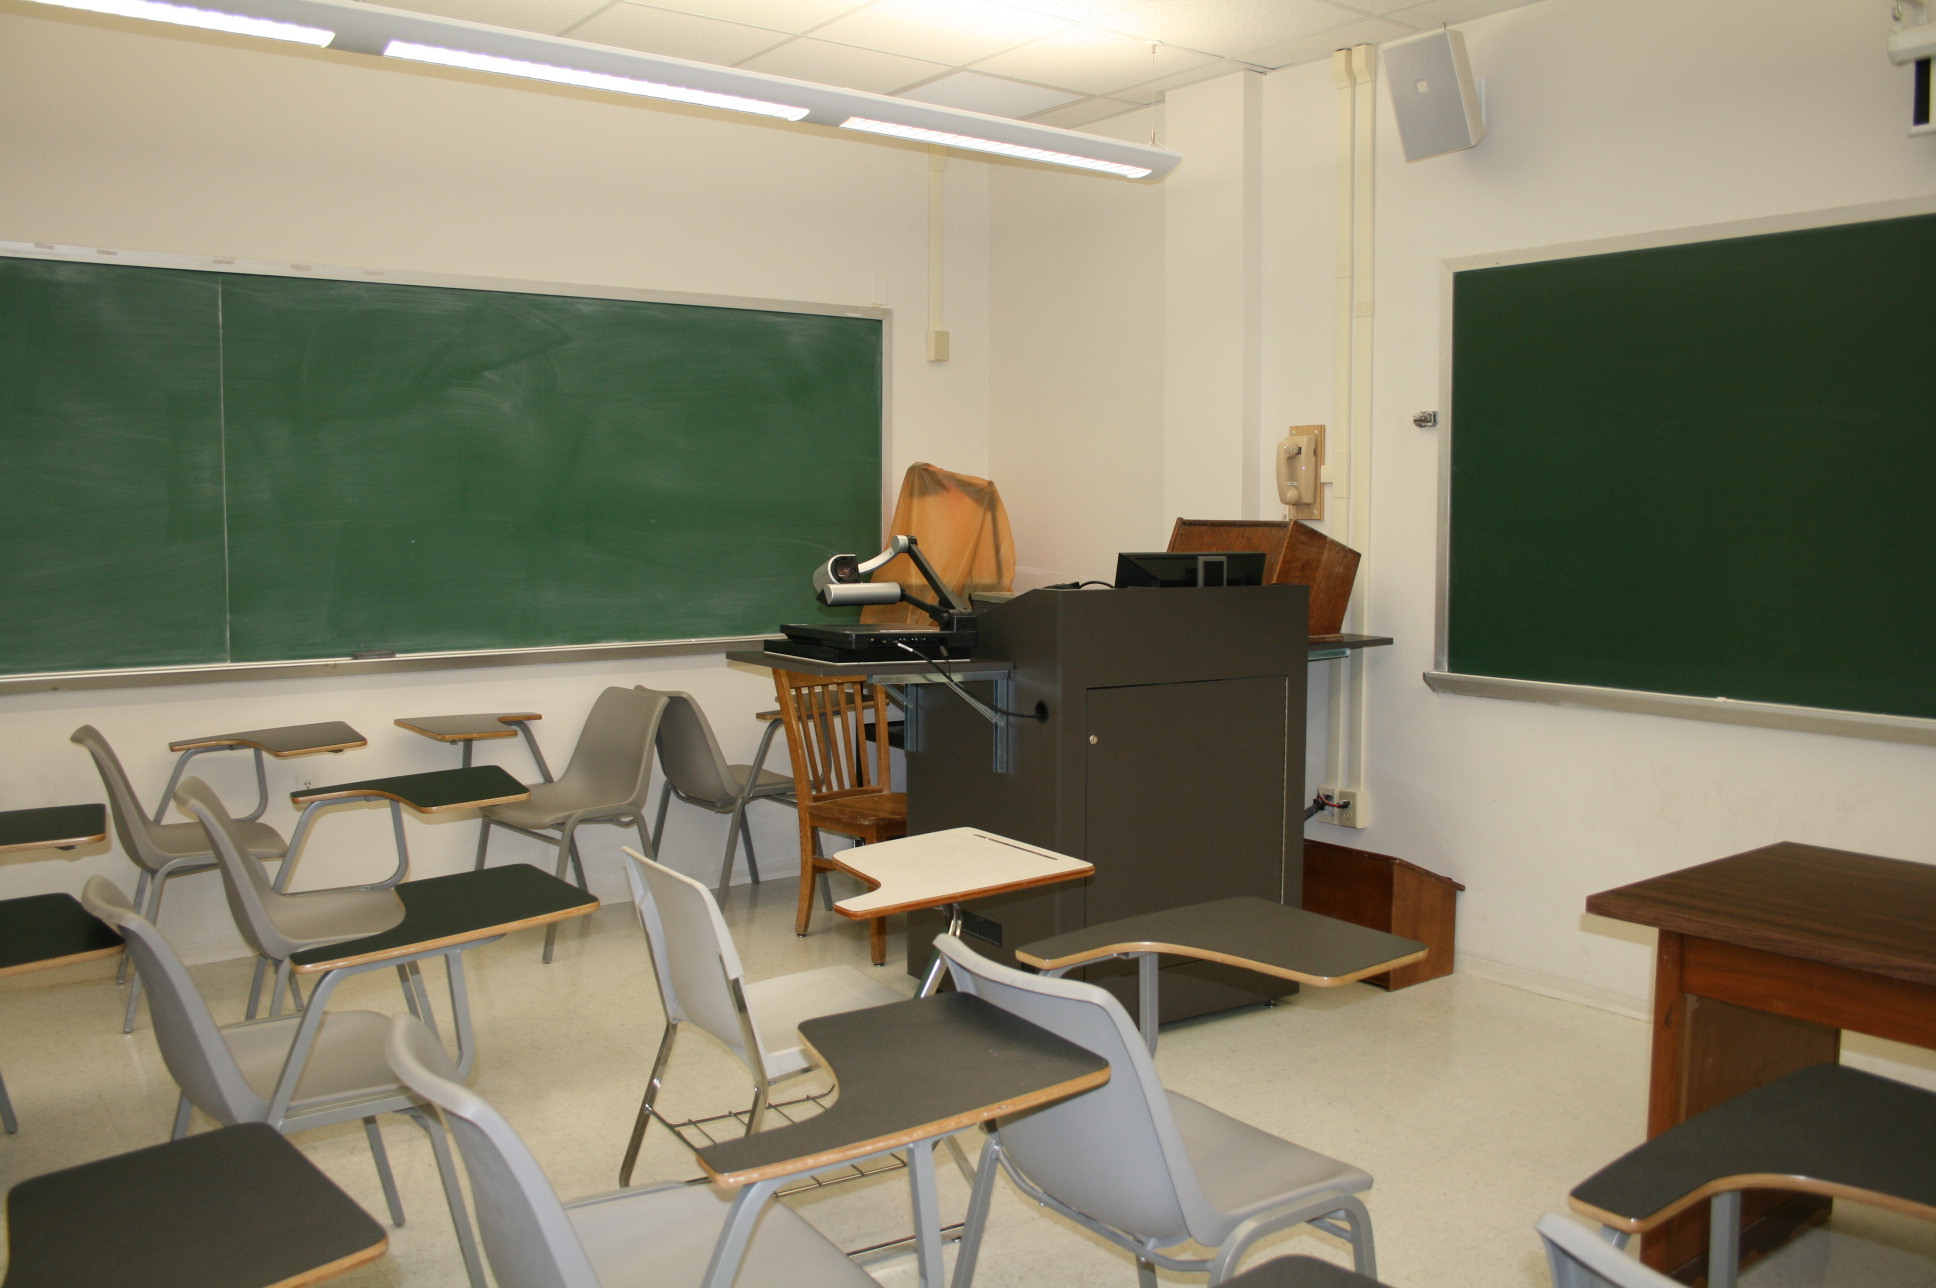 Classroom 135 in lockett from back